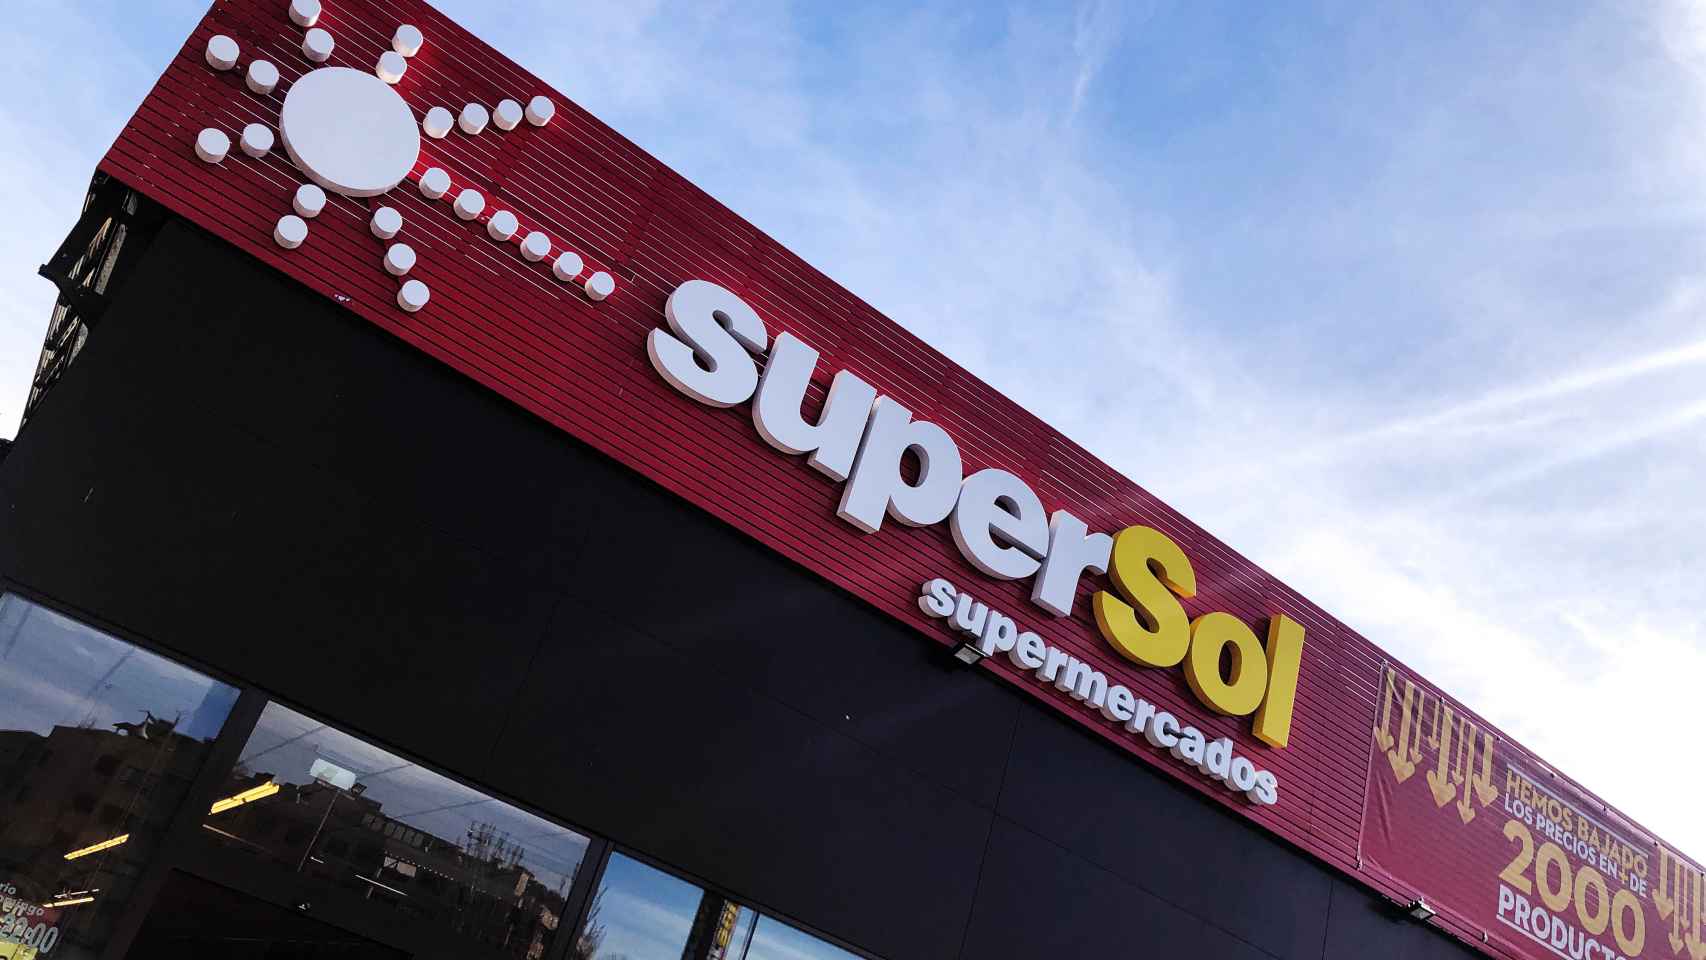 Las ventas de Supersol crecen un 16,5% más en el primer semestre por los precios bajos